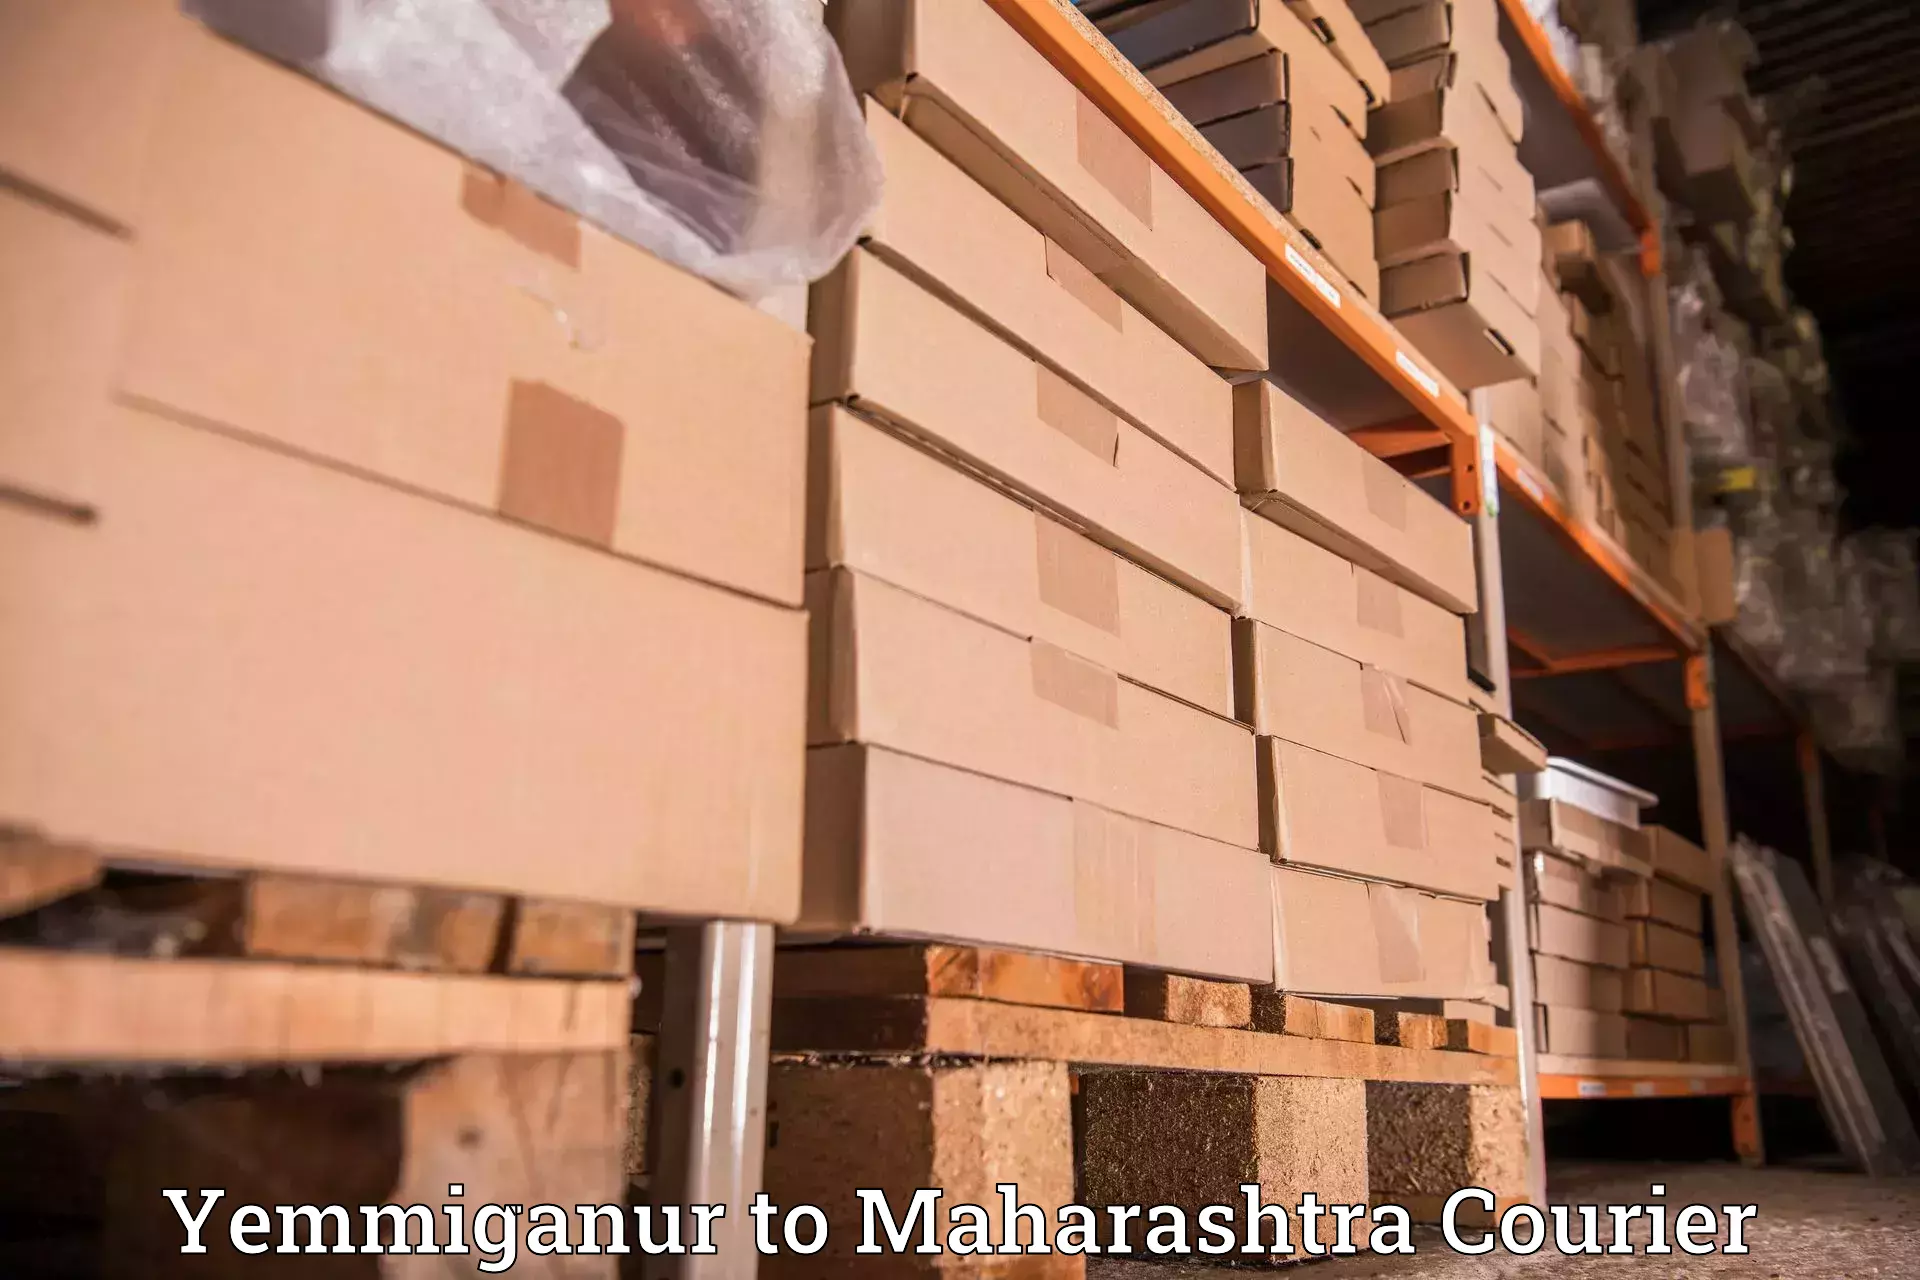 Efficient parcel service Yemmiganur to Bhandara